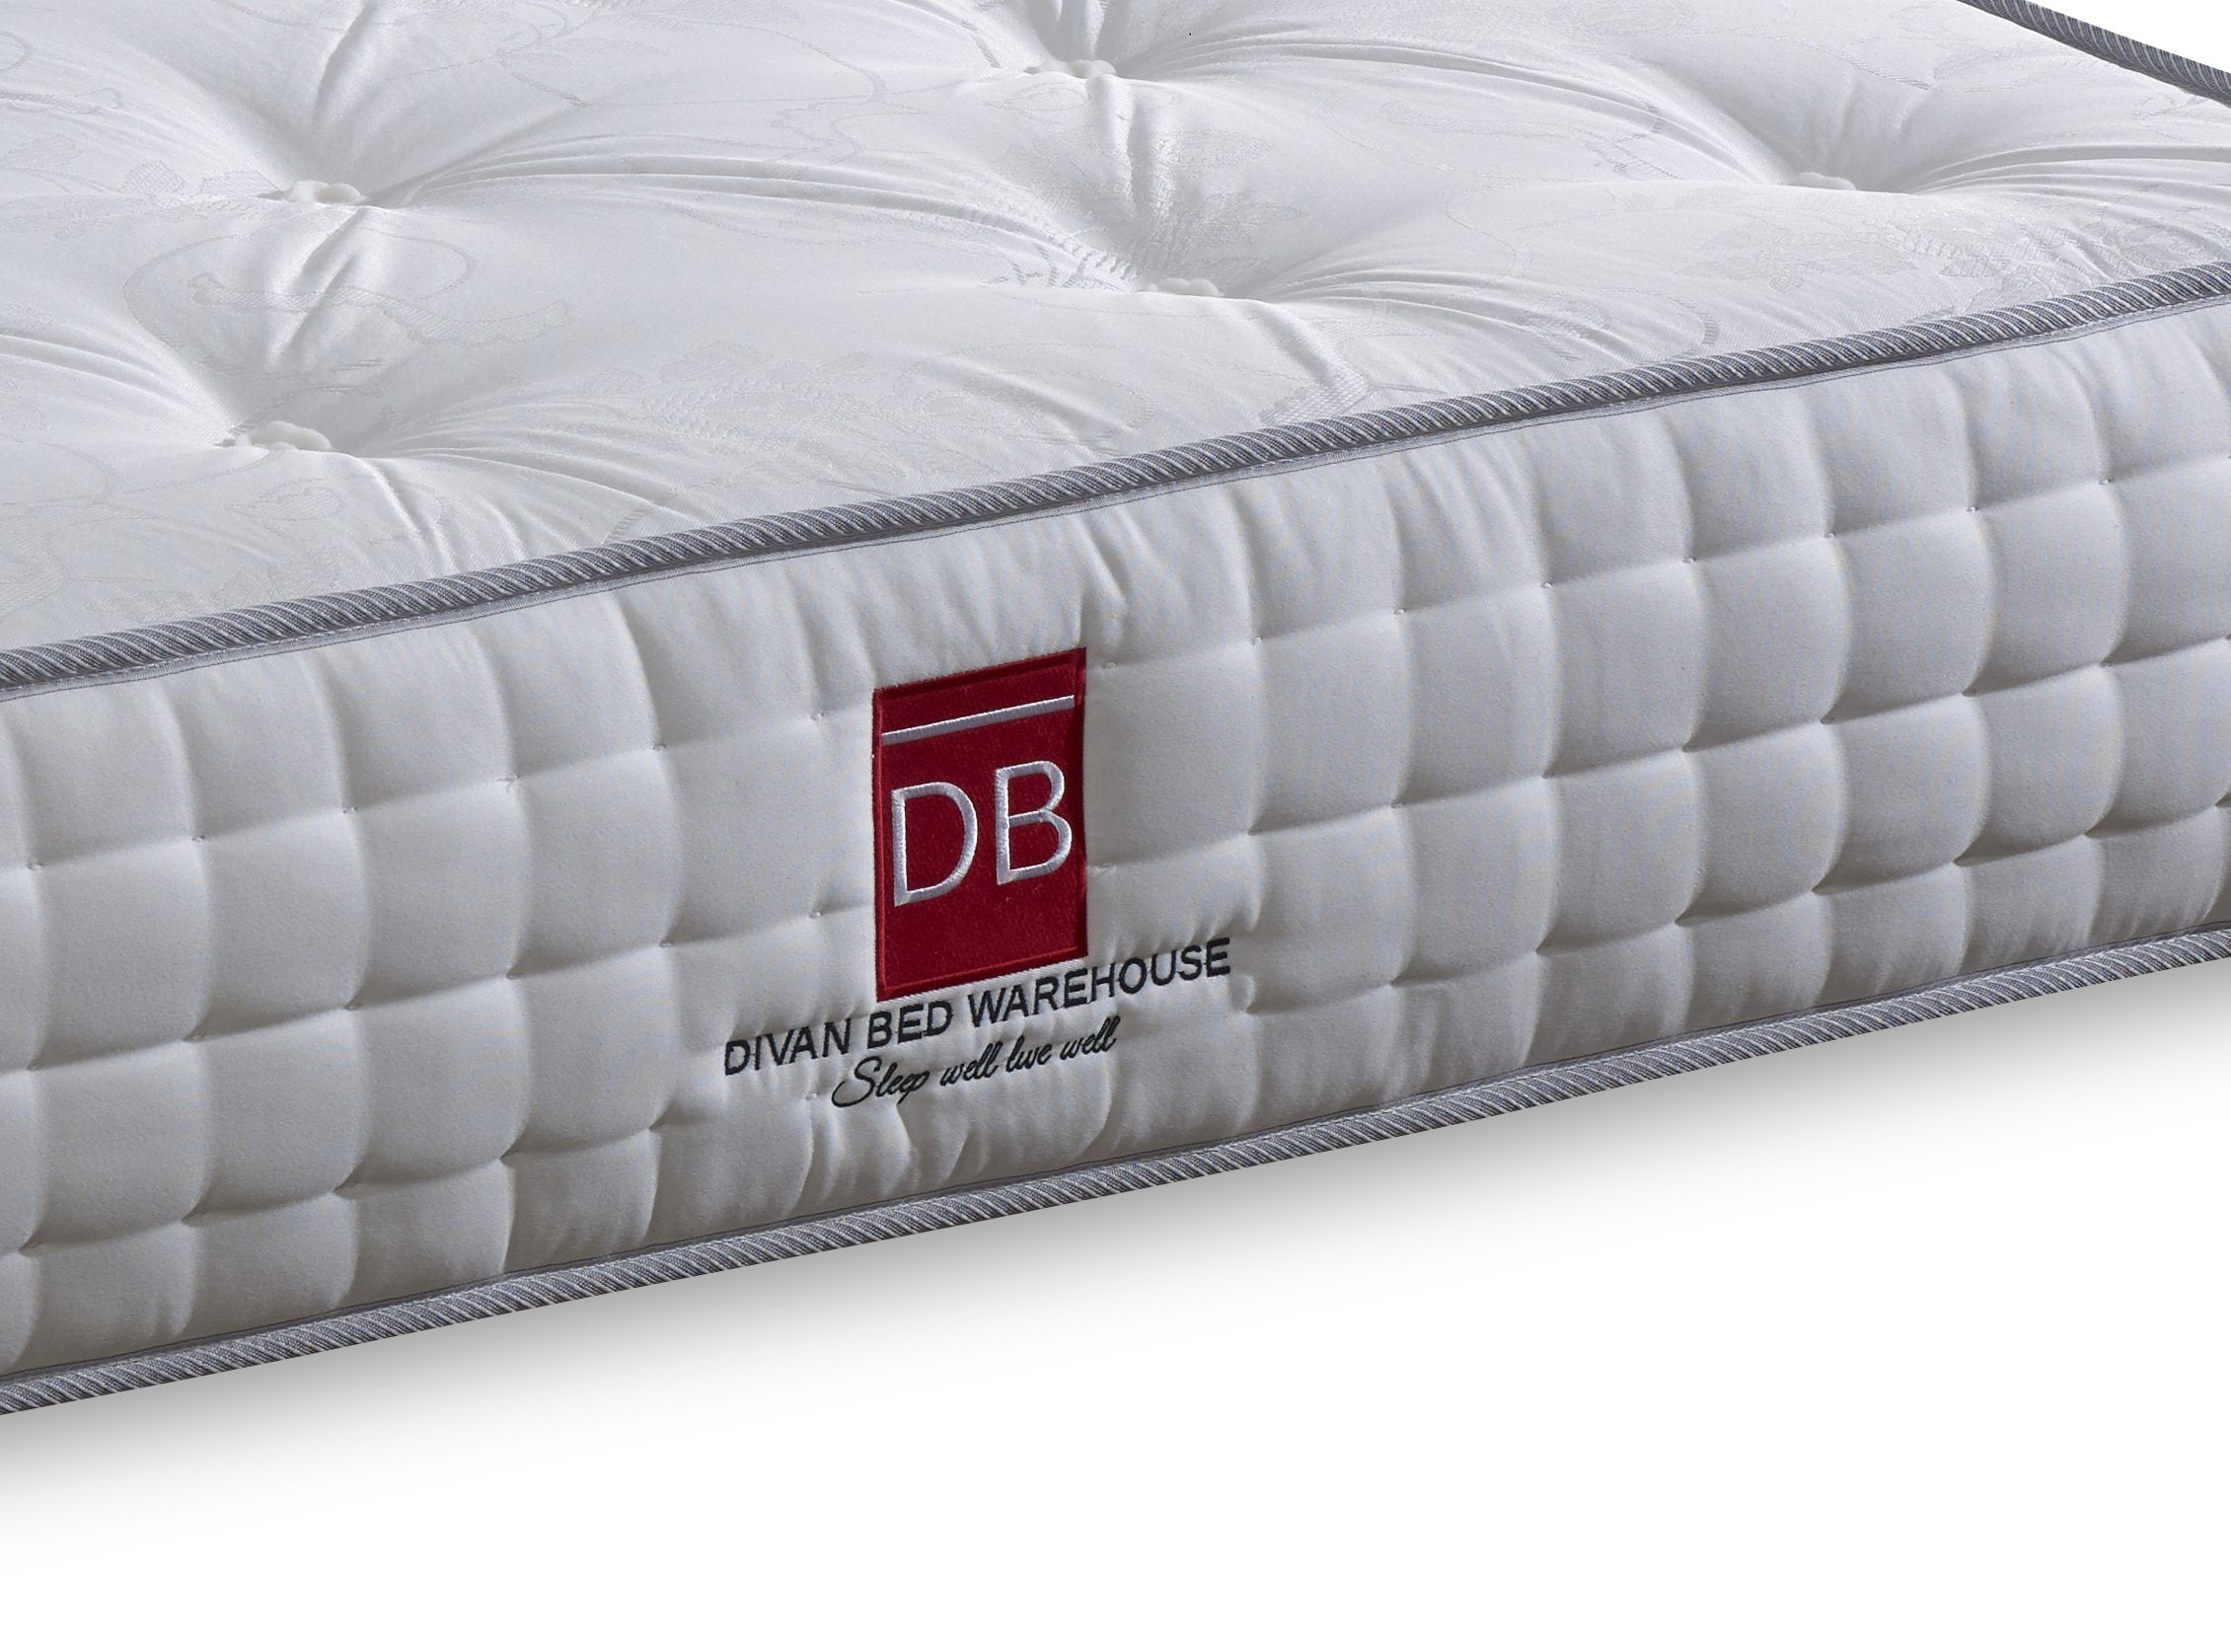 blenheim mattress king size